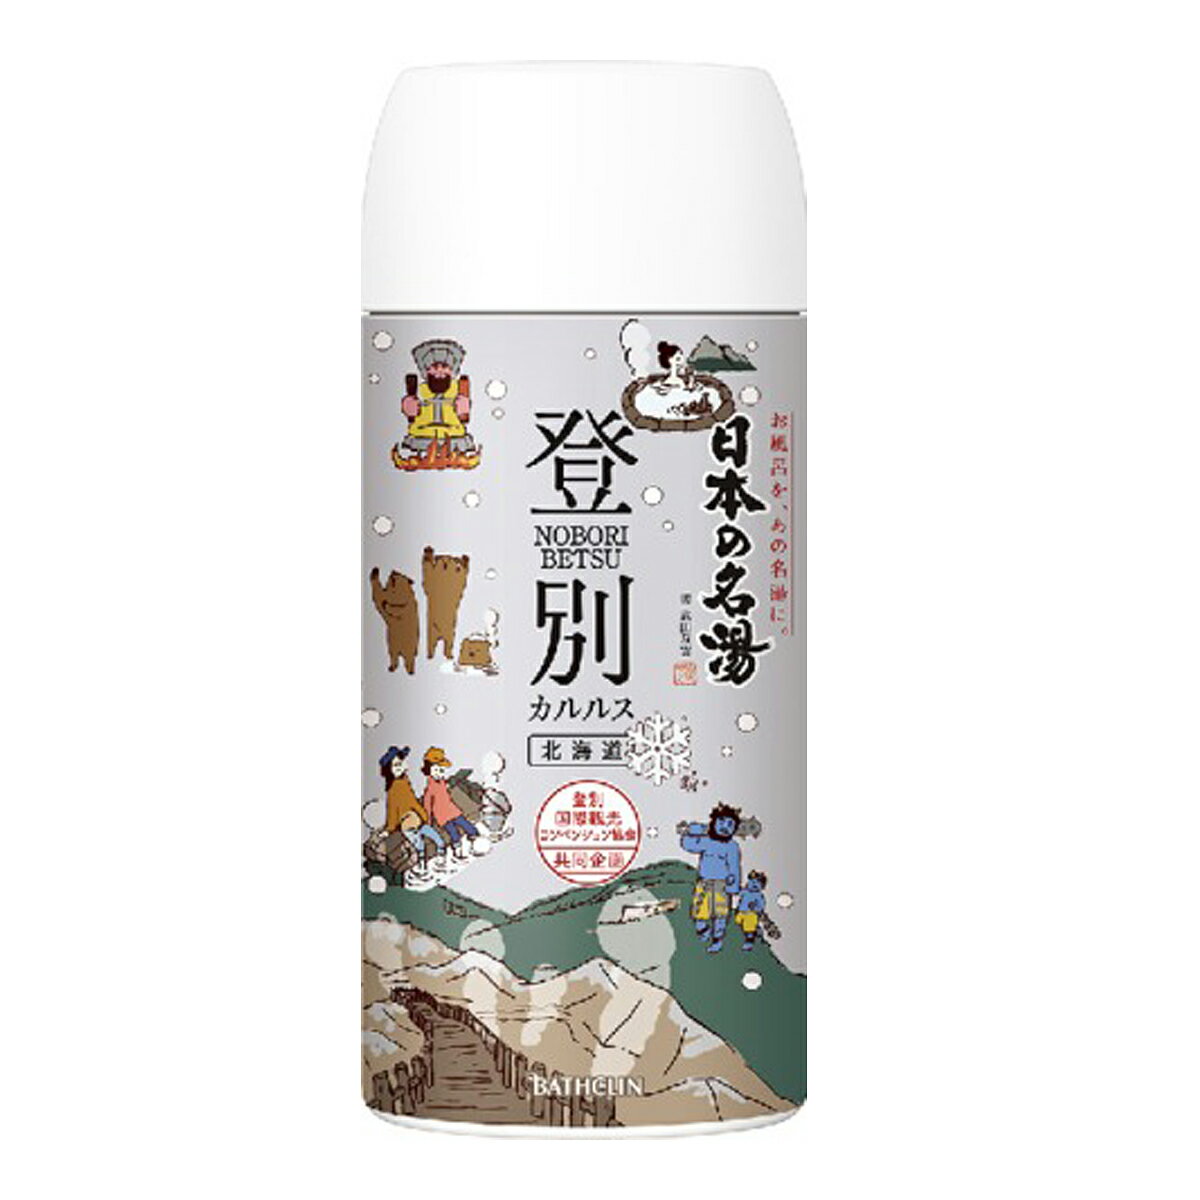 バスクリン 日本の名湯 登別カルルス 450g 薬用入浴剤 